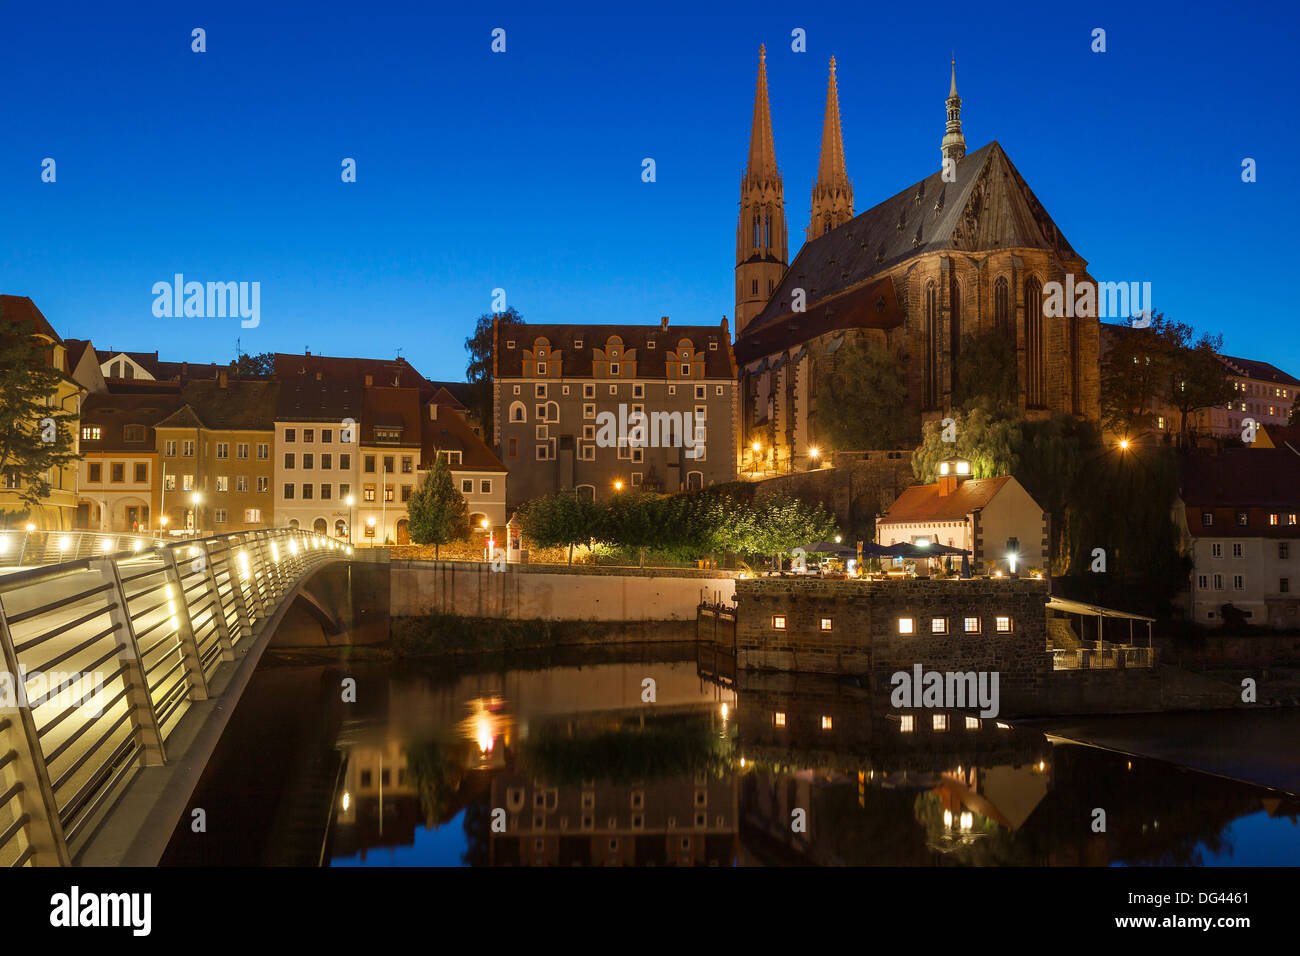 Allemagne/Saxe/Görlitz Görlitz, vue sur la ville avec la 'nuit' Peterskirche, 03 Oct 2013 Banque D'Images